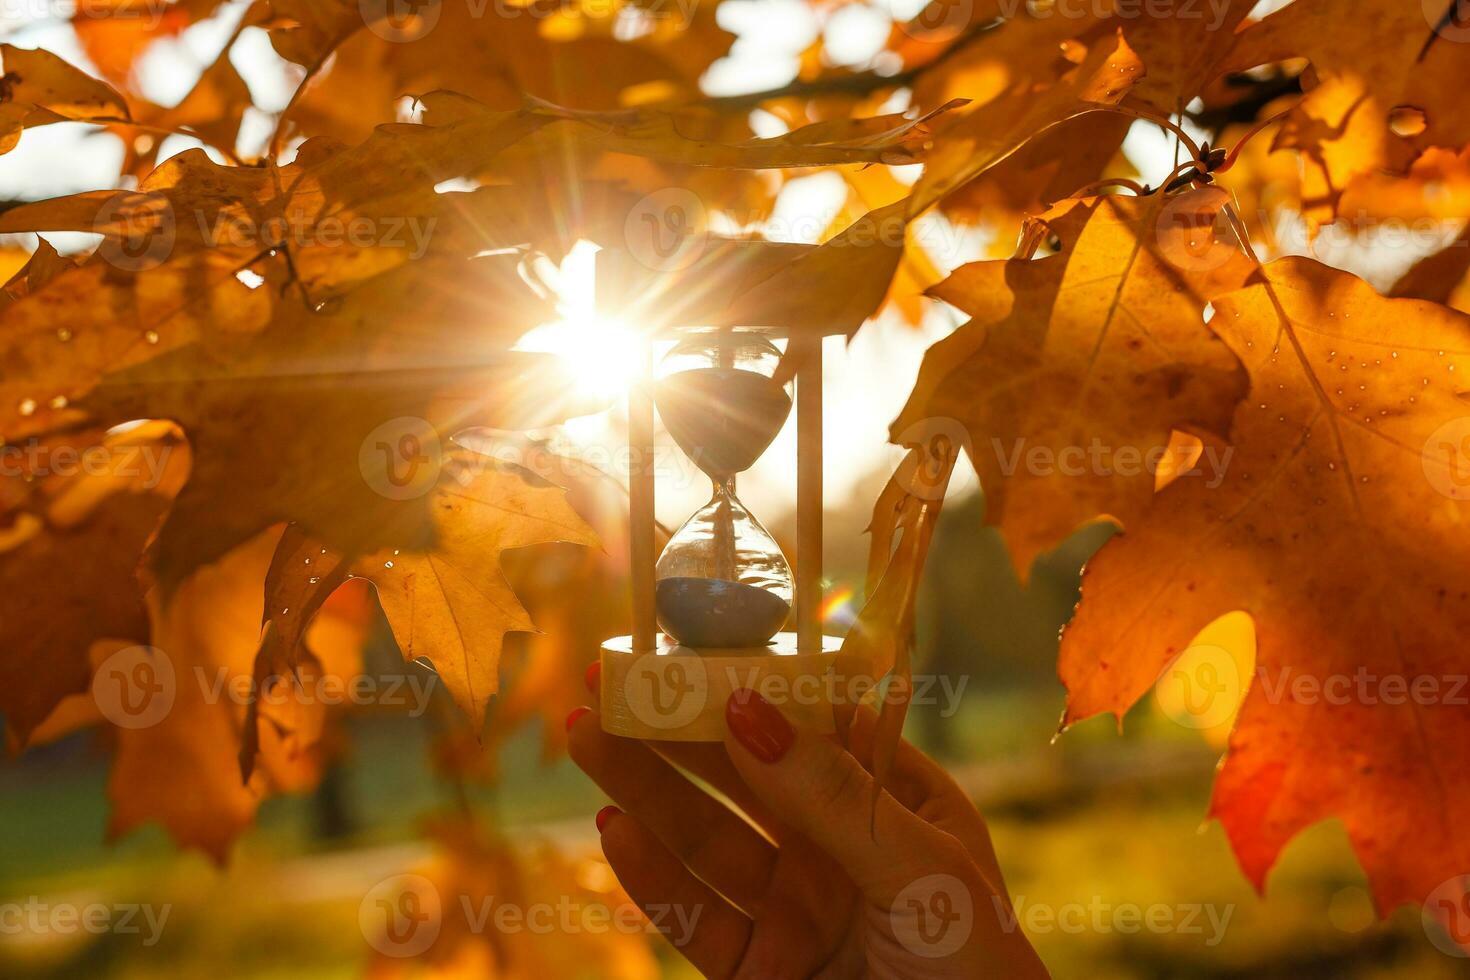 höst tid tema, timglas på fallen löv i olika färger med kopia Plats. foto